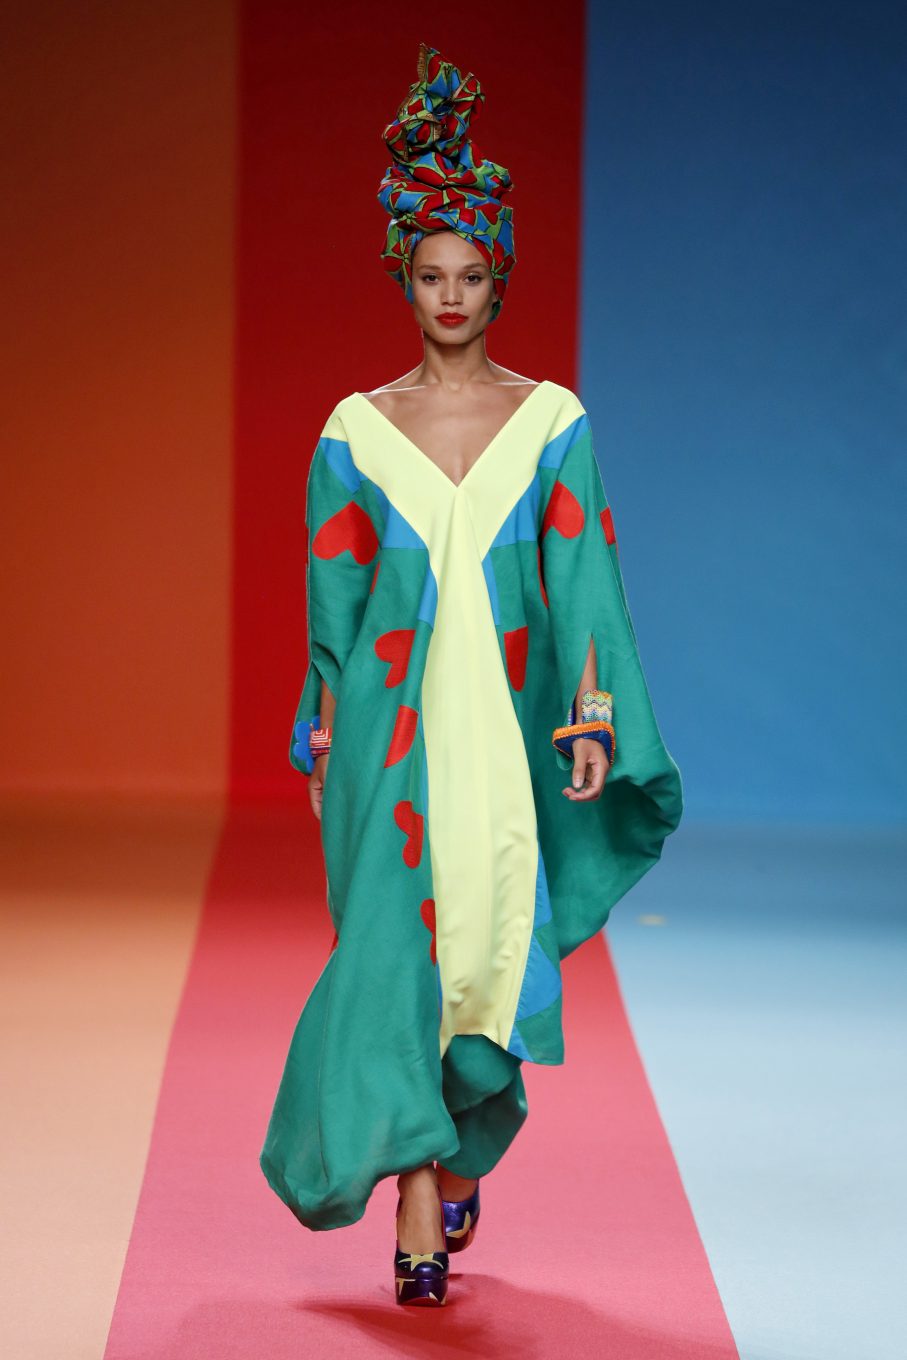 Modelo con túnica de colores de Ágatha Ruiz de la Prada